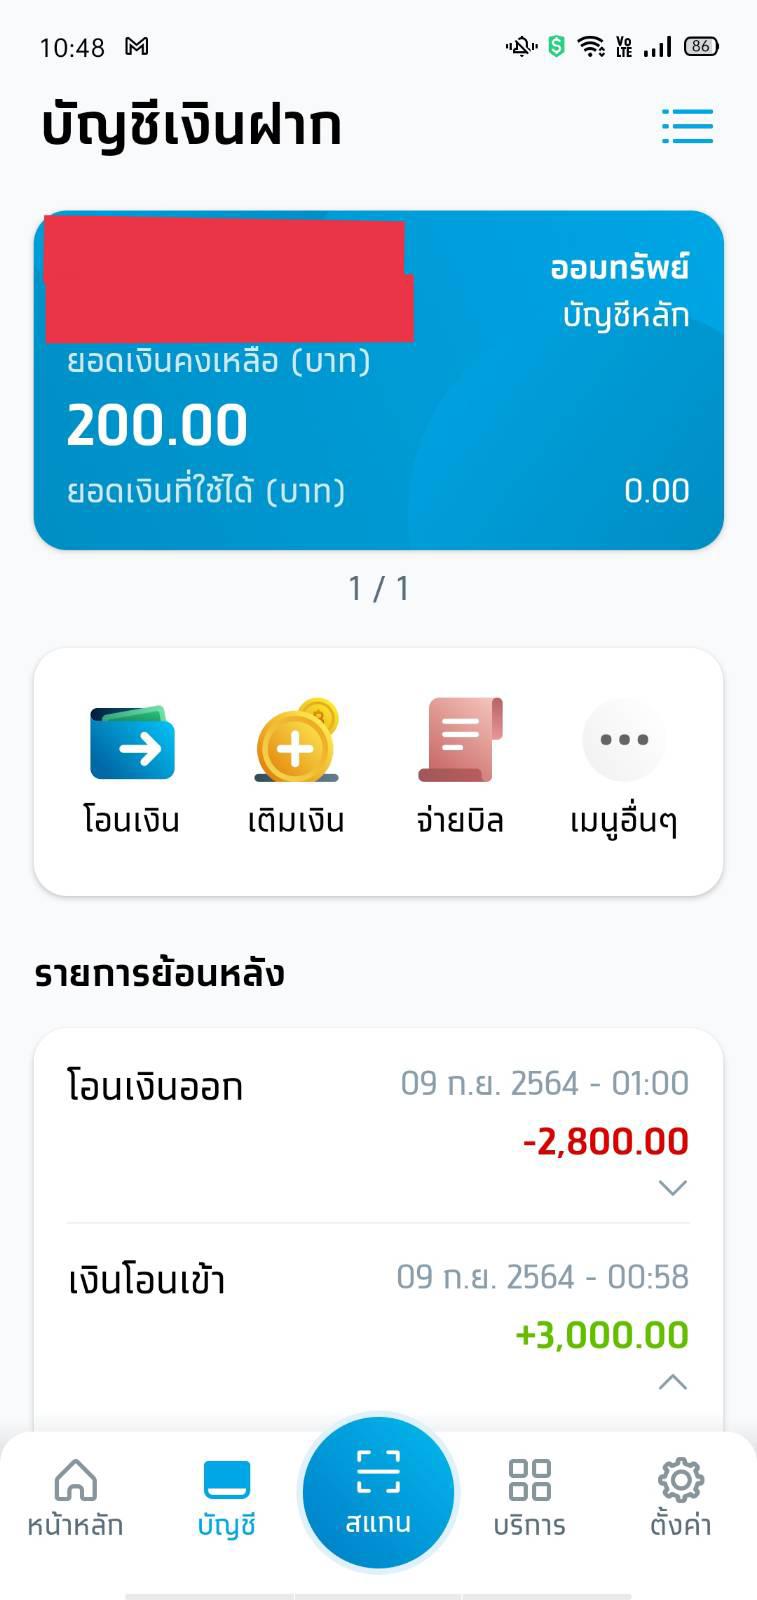 โดนหักค่าอะไรไม่รู้ 200 บาทของธนาคารกรุงไทย - Pantip